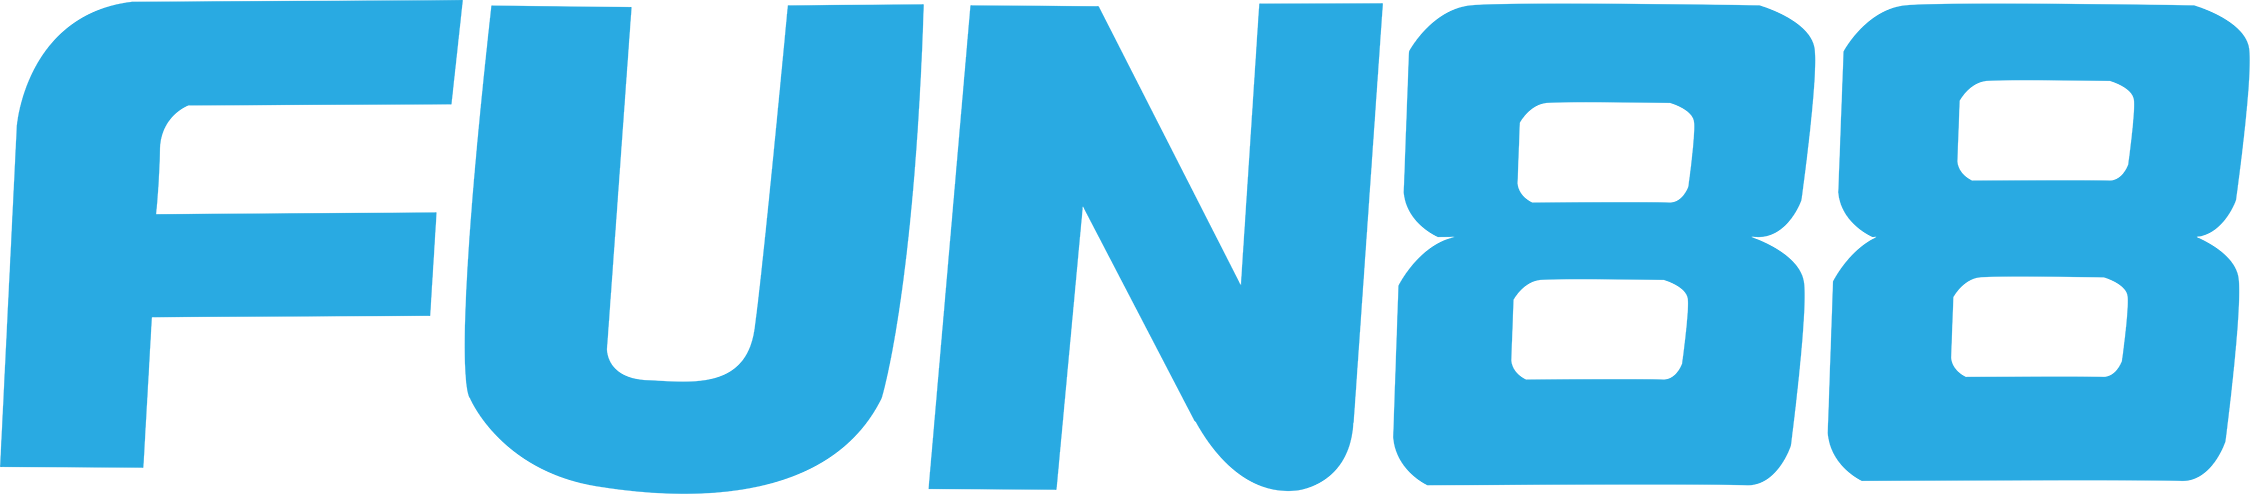 Fun88-logo